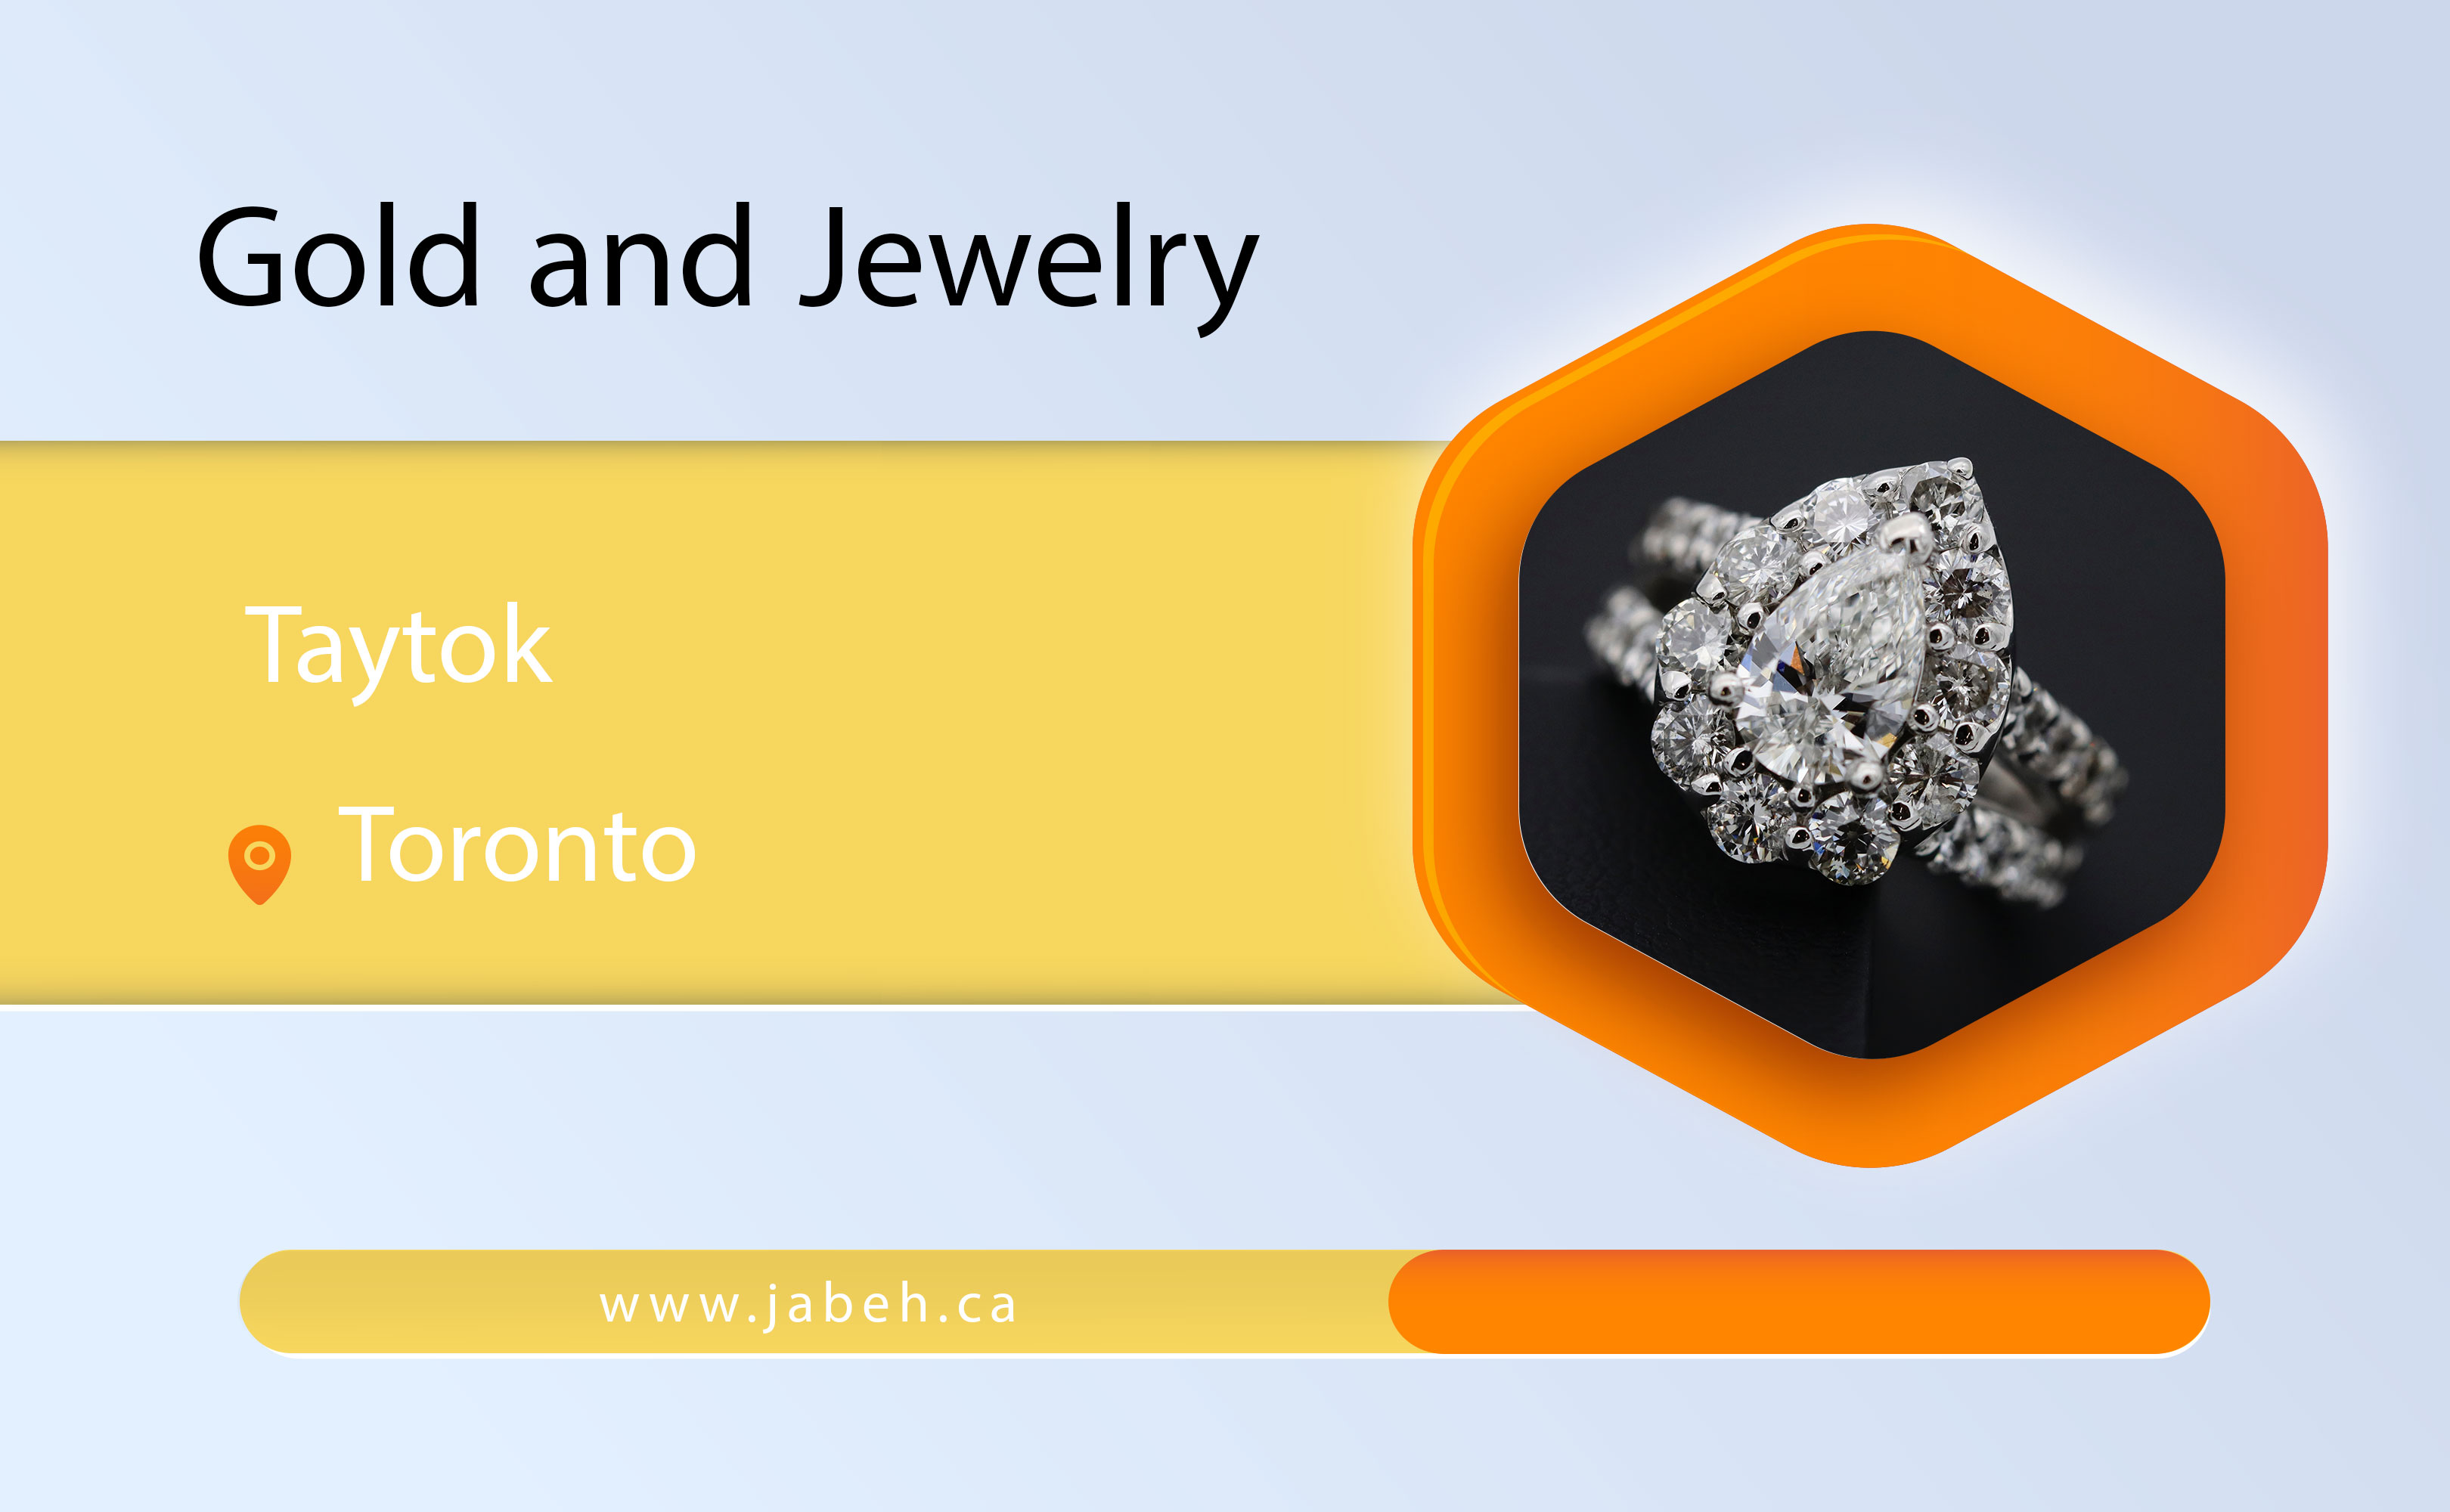 Taituk Jewelry in Toronto